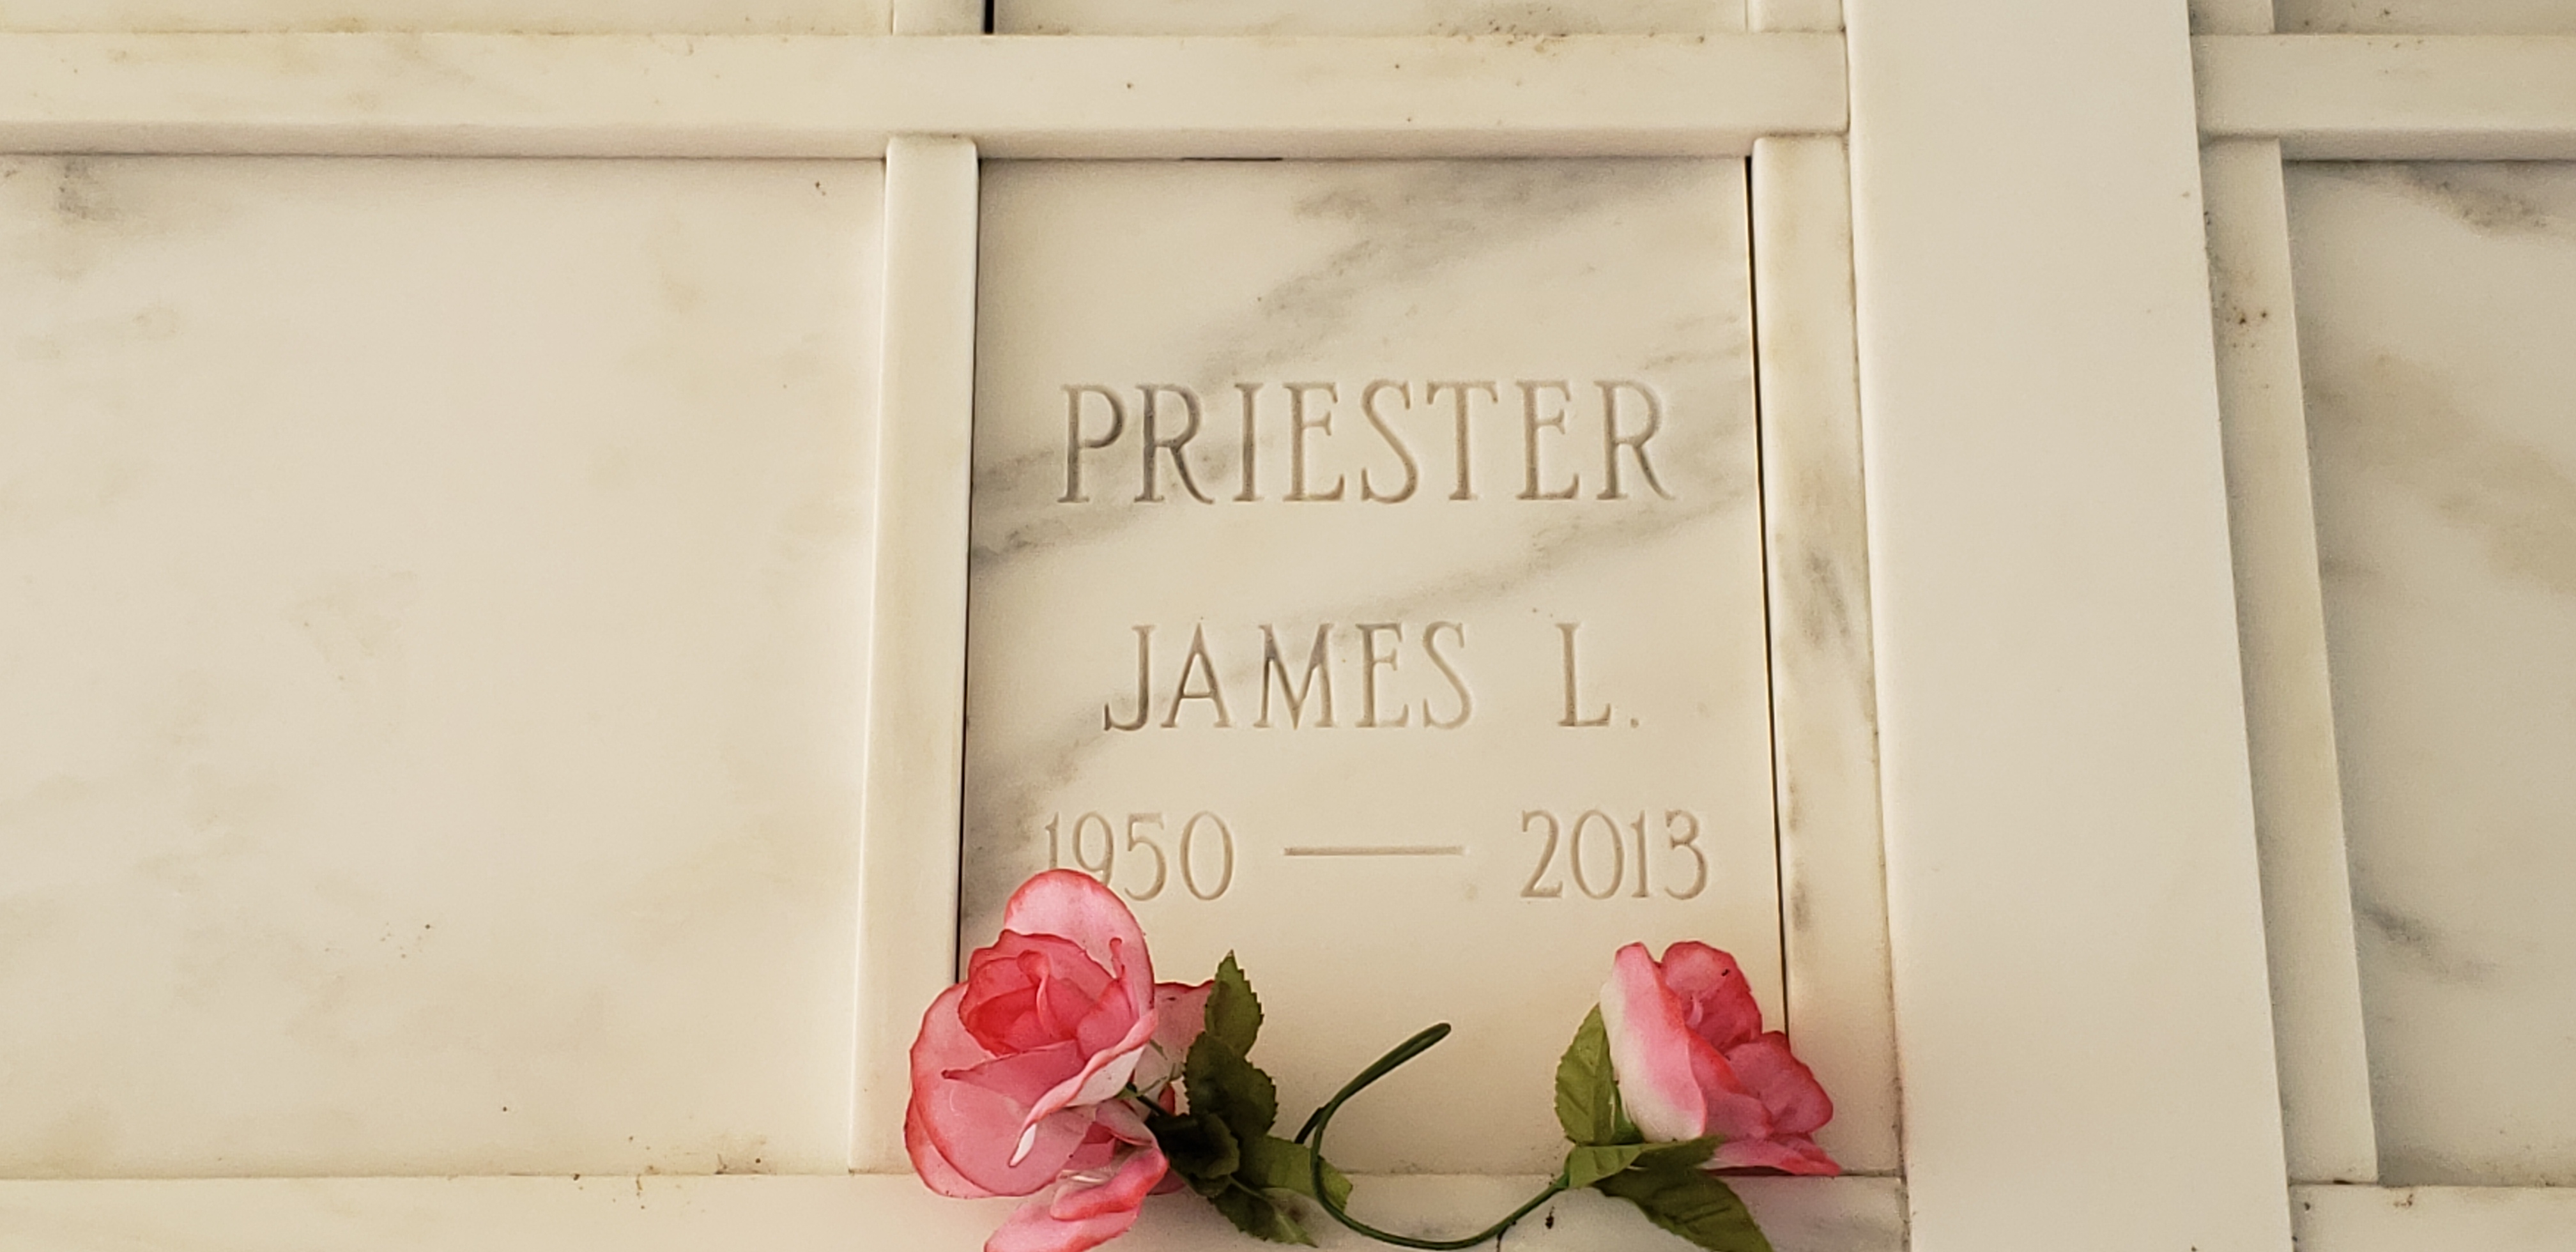 James L Priester